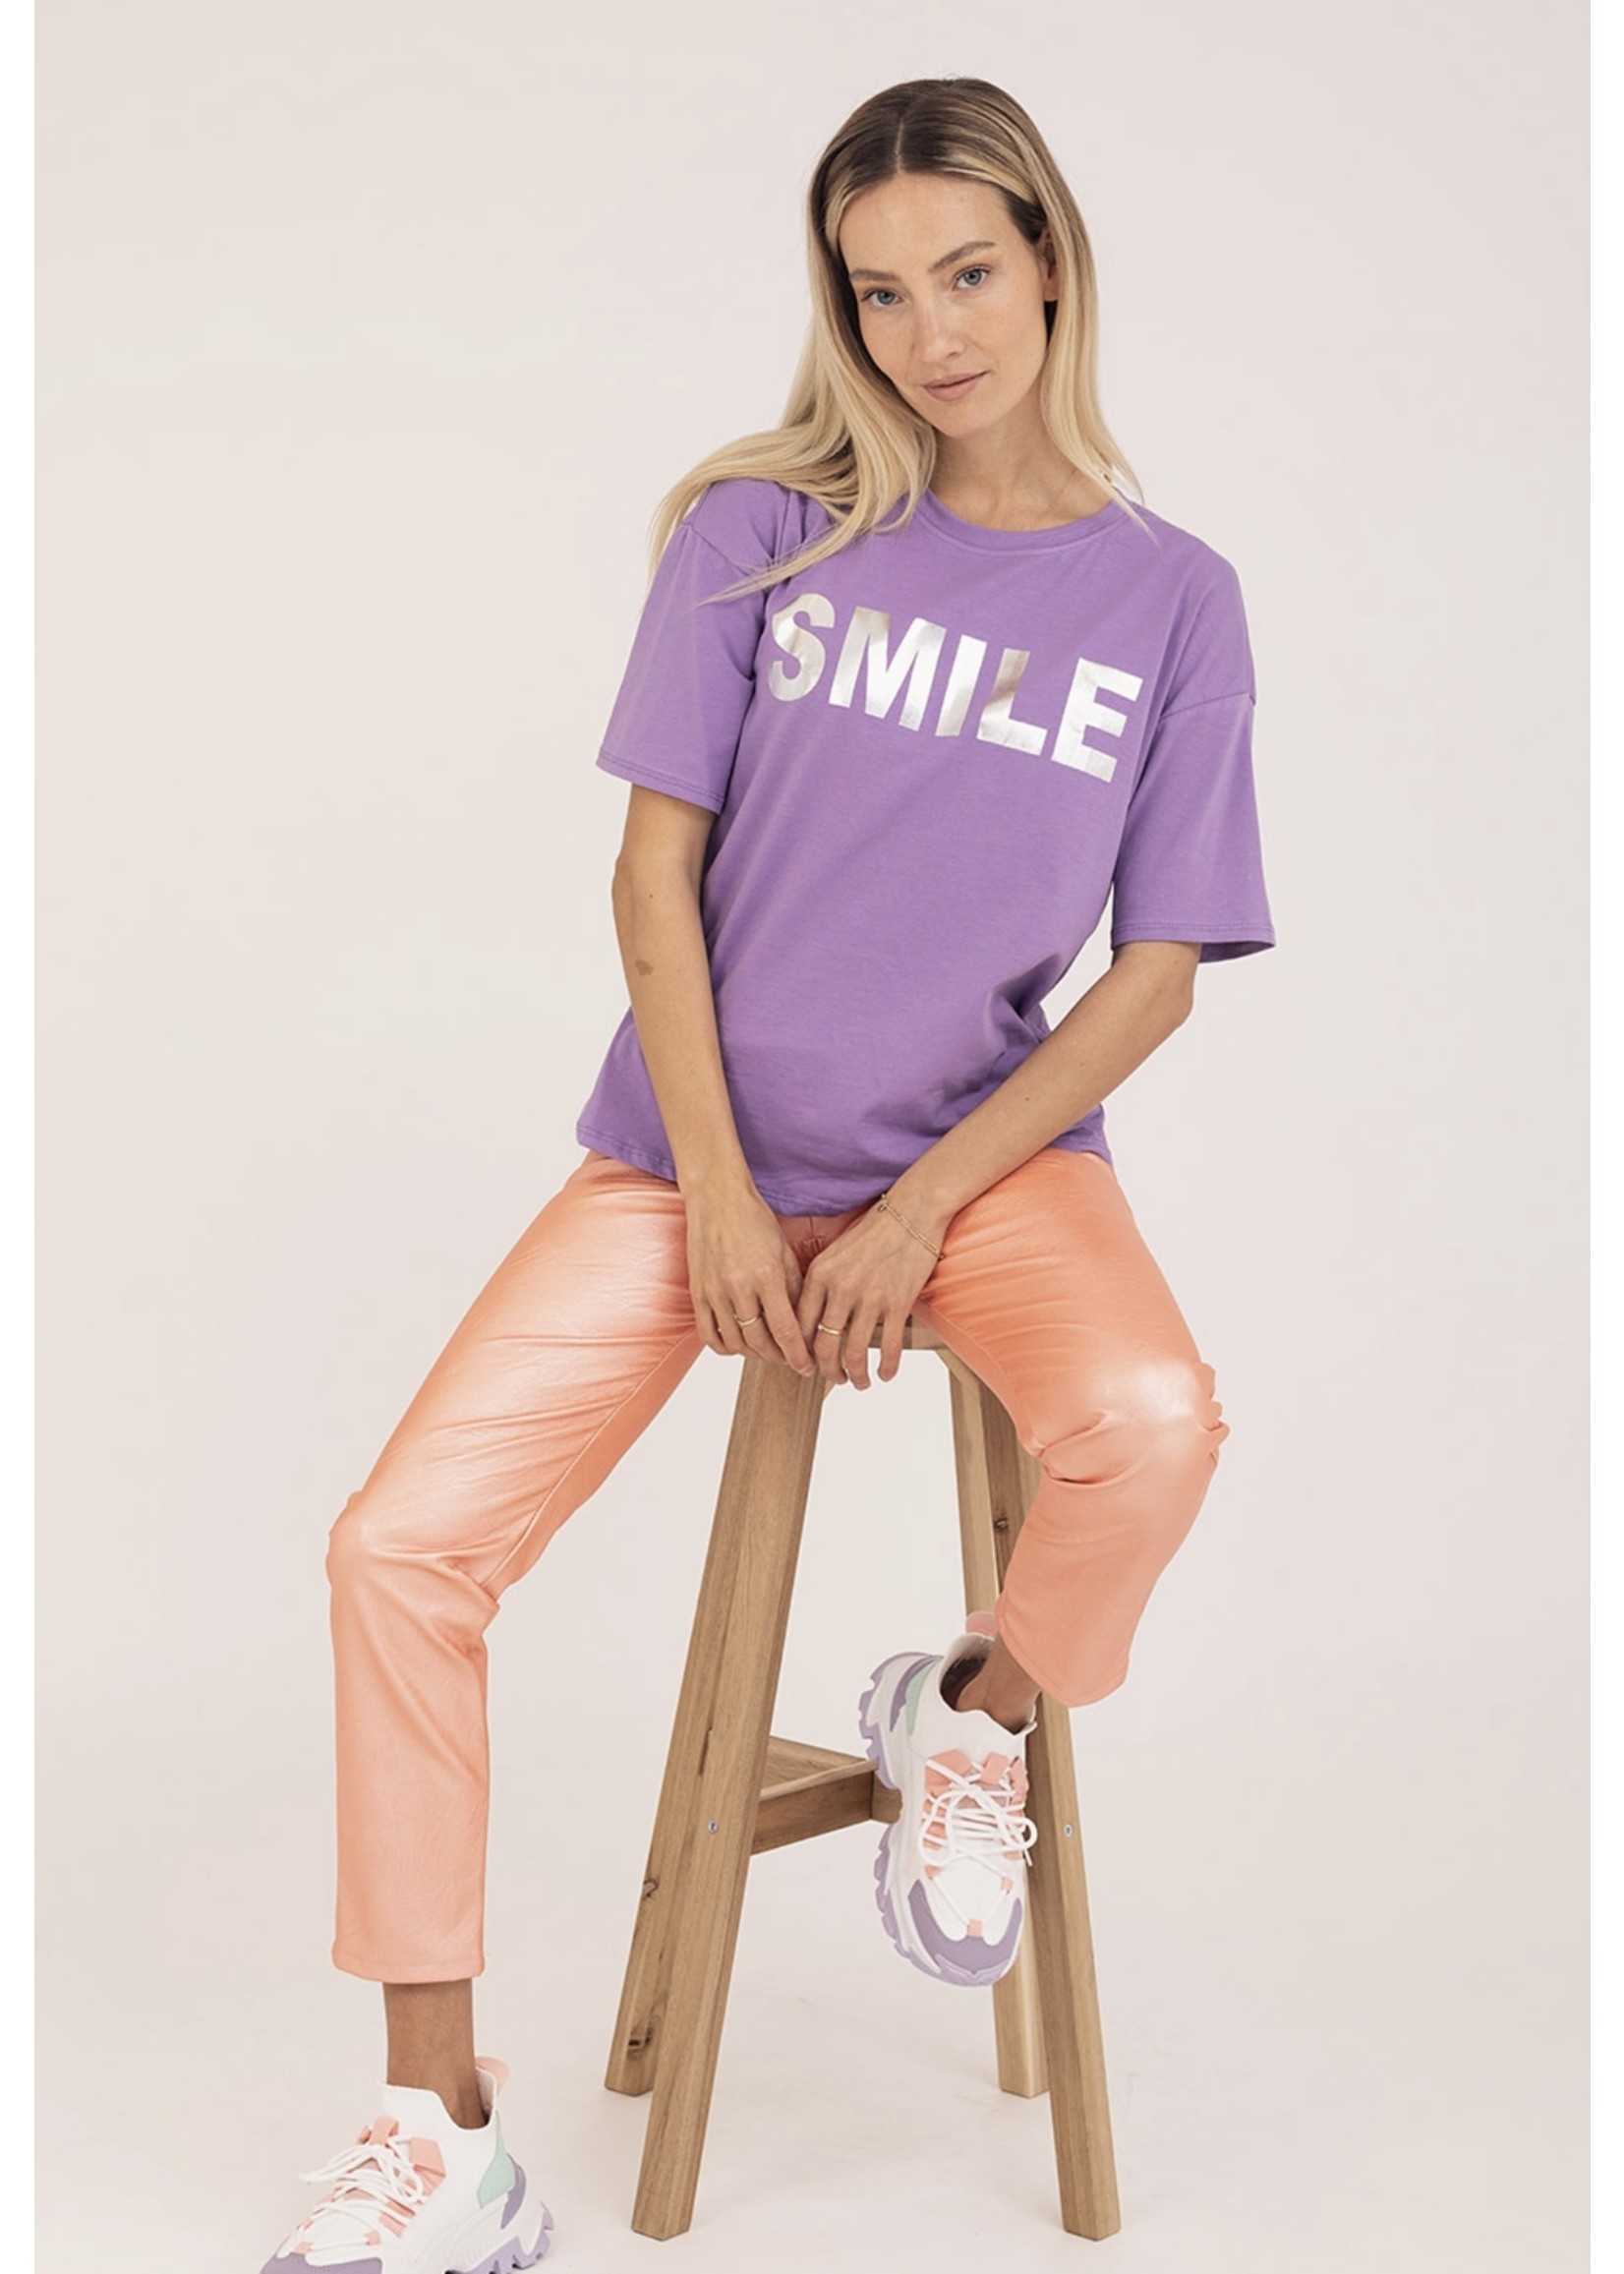 B-stylicious Smile - T-shirt - Mint, Lila